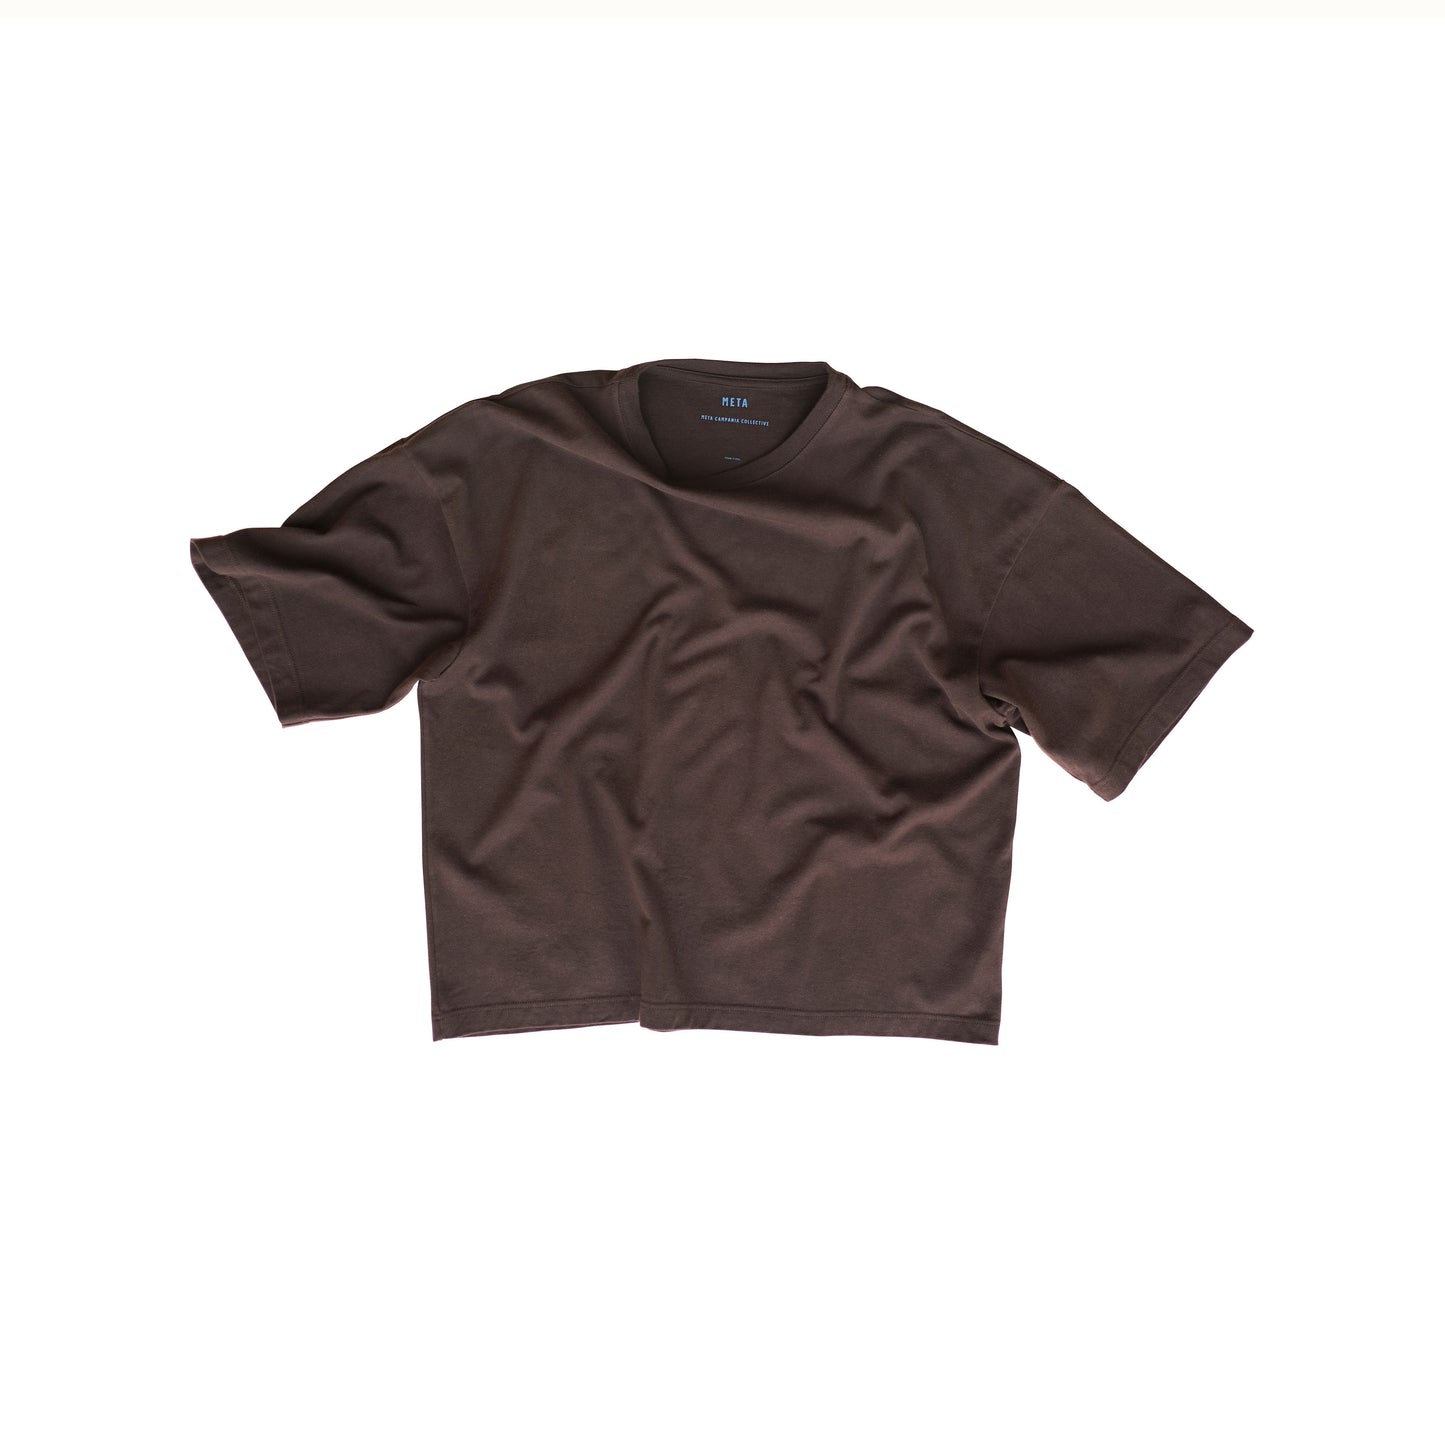 Nat Jersey Cotton Surfer T Shirt Dark Chocolate Brown